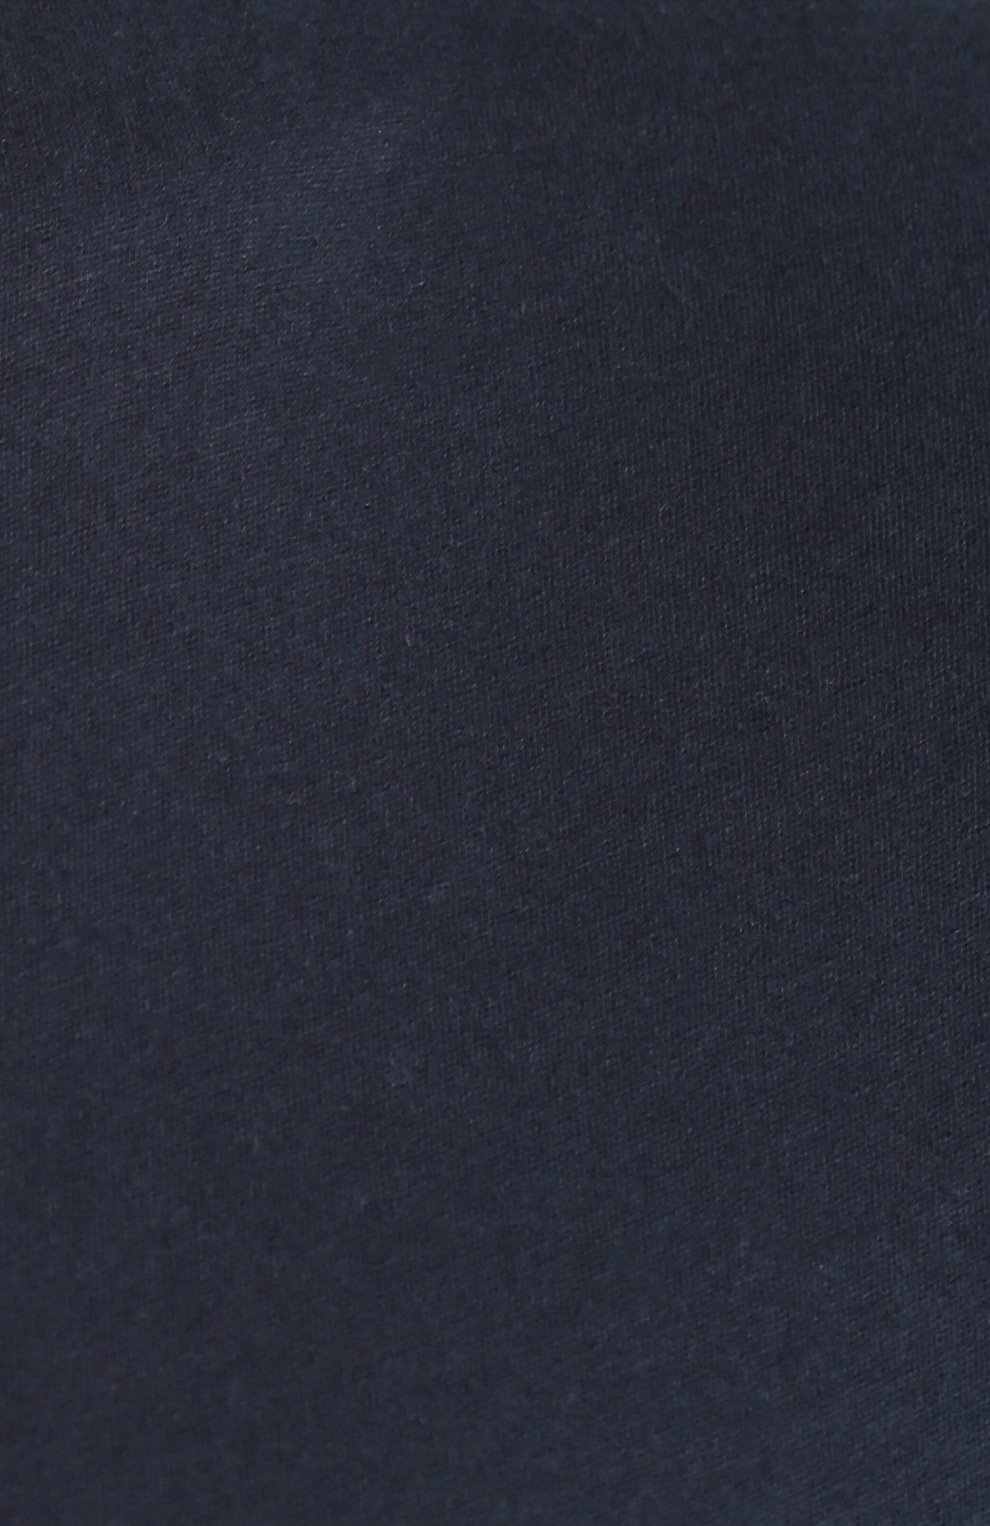 Мужская хлопковая футболка ORLEBAR BROWN темно-синего цвета, арт. 259555 | Фото 5 (Принт: Без принта; Рукава: Короткие; Длина (для топов): Стандартные; Мужское Кросс-КТ: Футболка-одежда; Материал внешний: Хлопок; Стили: Кэжуэл)